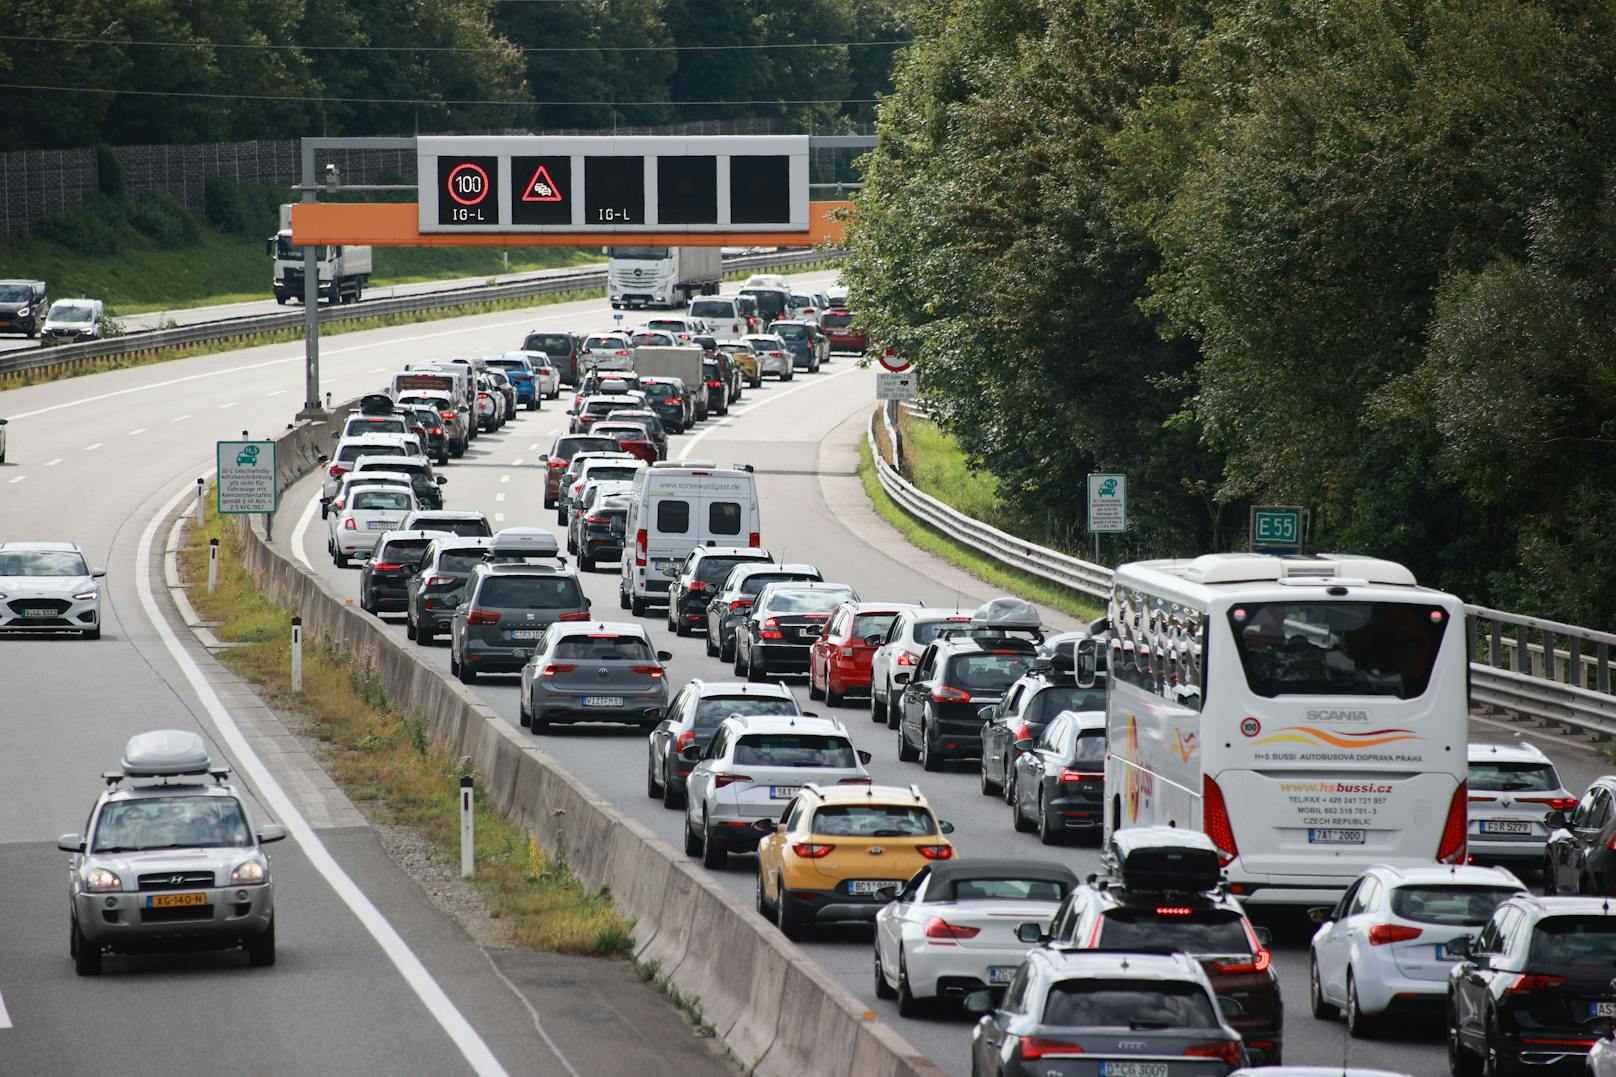 Verkehrs-Kollaps in Österreich – hier kommt es zu Staus